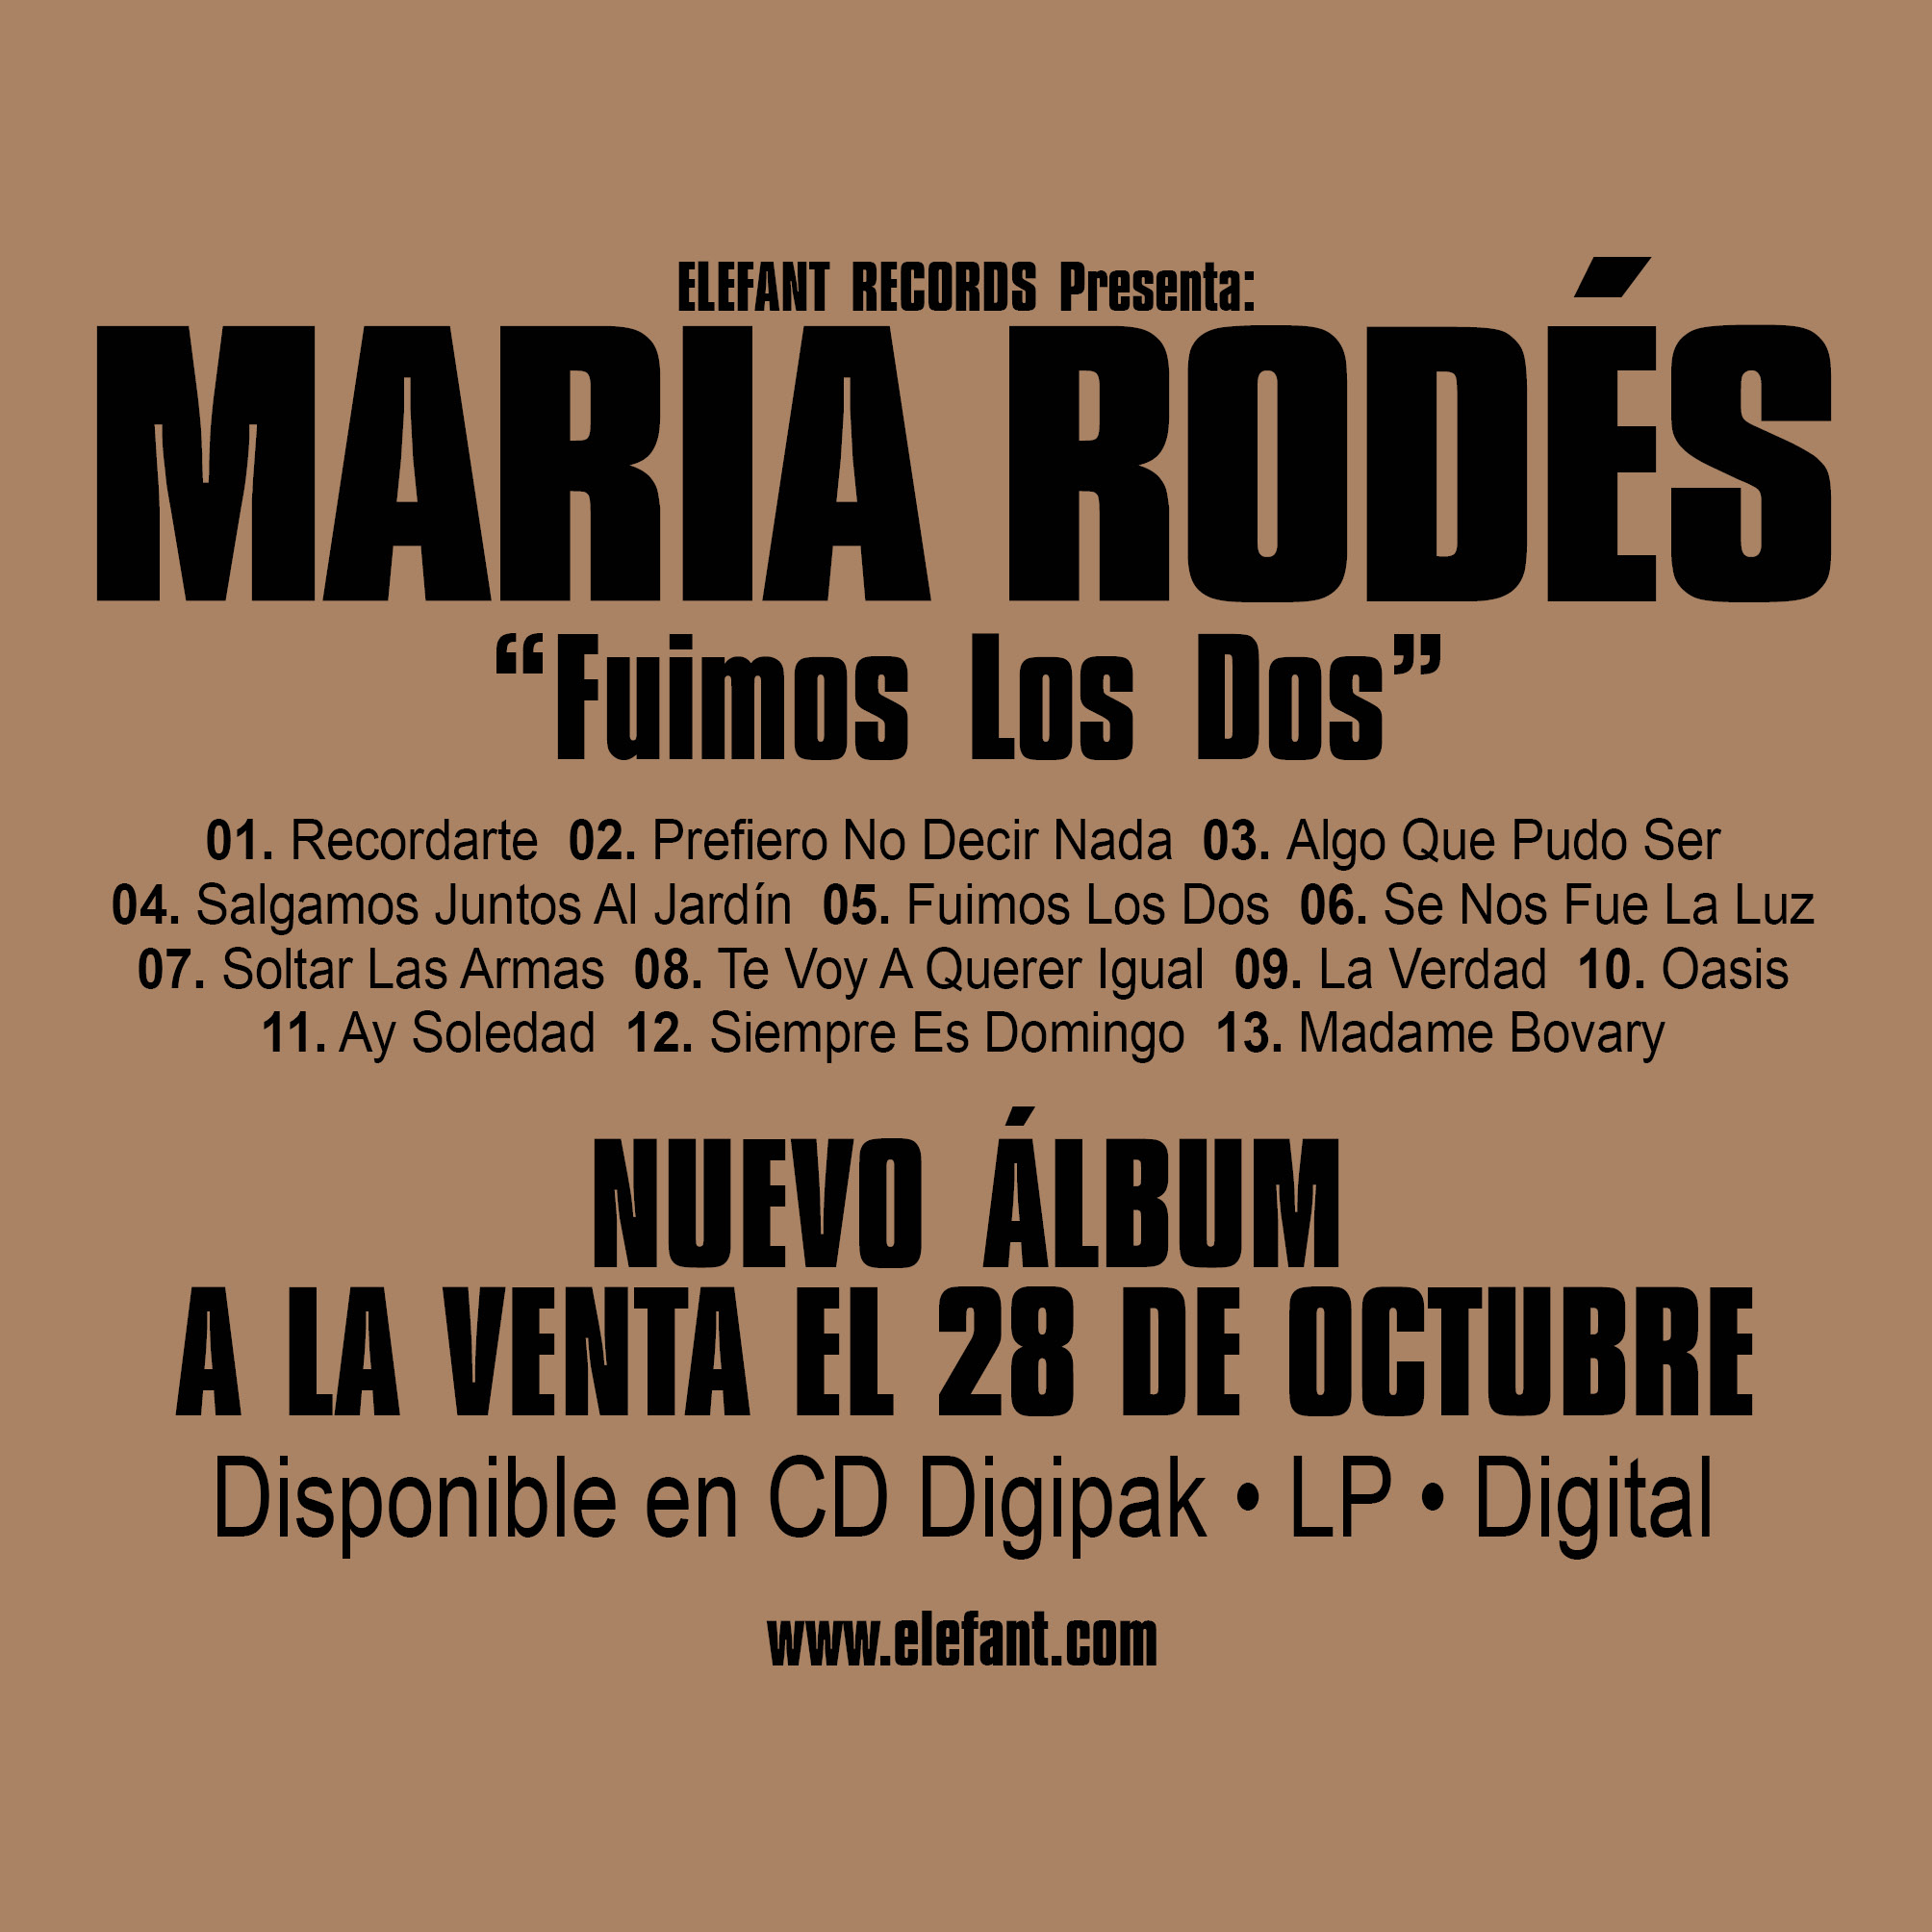 MARIA RODÉS "Fuimos Los Dos" LP/CD